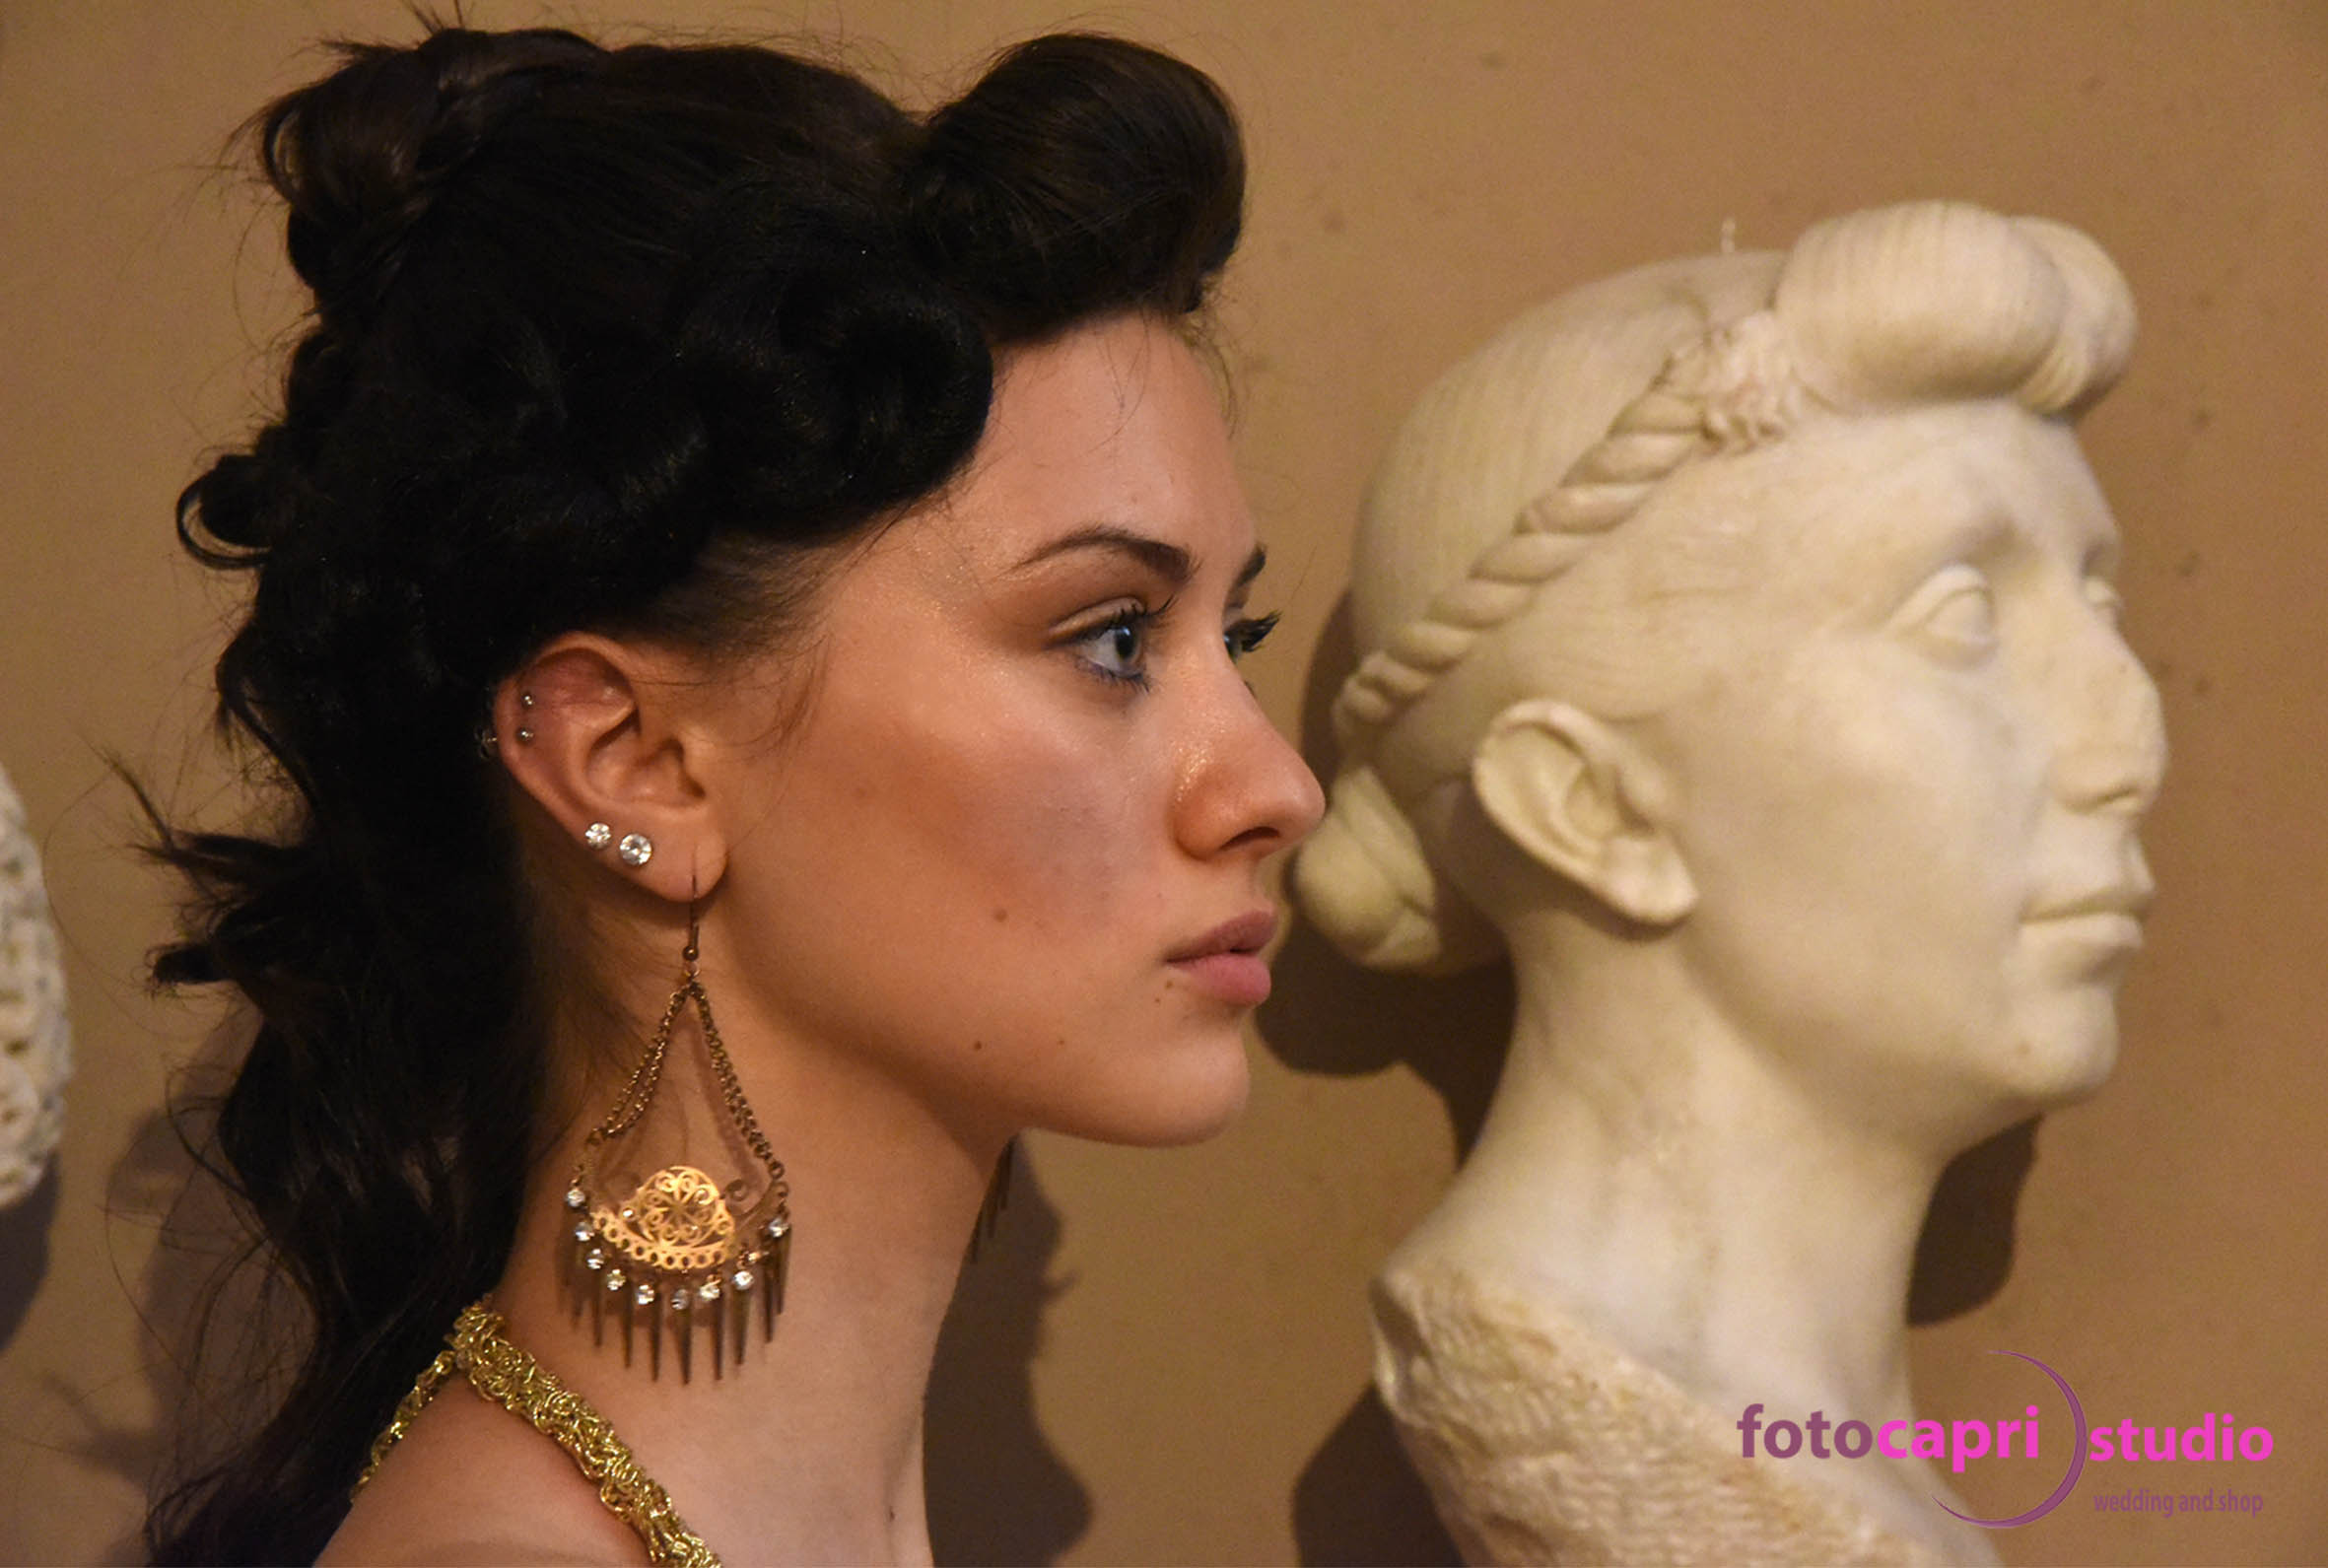 La bellezza nell�epoca dell�antica Roma  con Miss Fanum Fortunae � La bella Ottavia